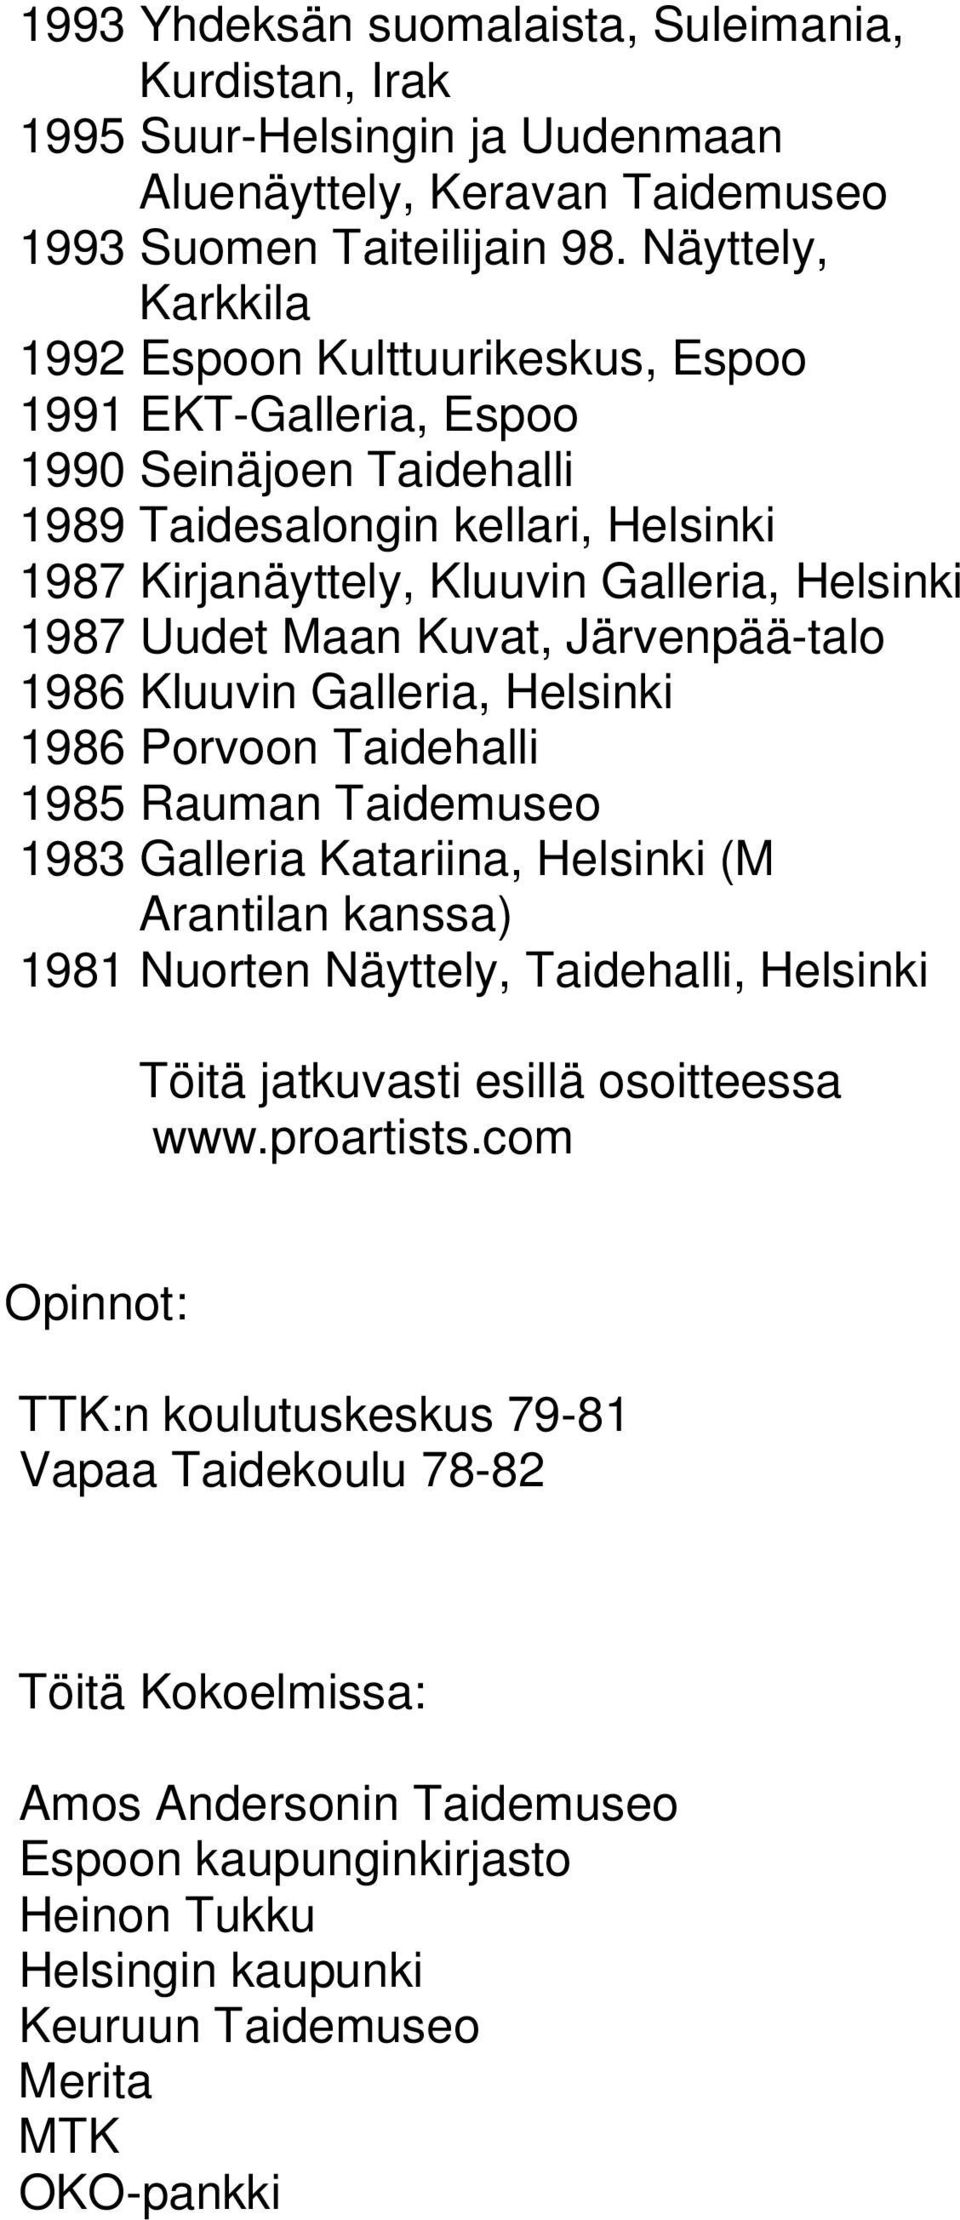 Maan Kuvat, Järvenpää-talo 1986 Kluuvin Galleria, Helsinki 1986 Porvoon Taidehalli 1985 Rauman Taidemuseo 1983 Galleria Katariina, Helsinki (M Arantilan kanssa) 1981 Nuorten Näyttely, Taidehalli,